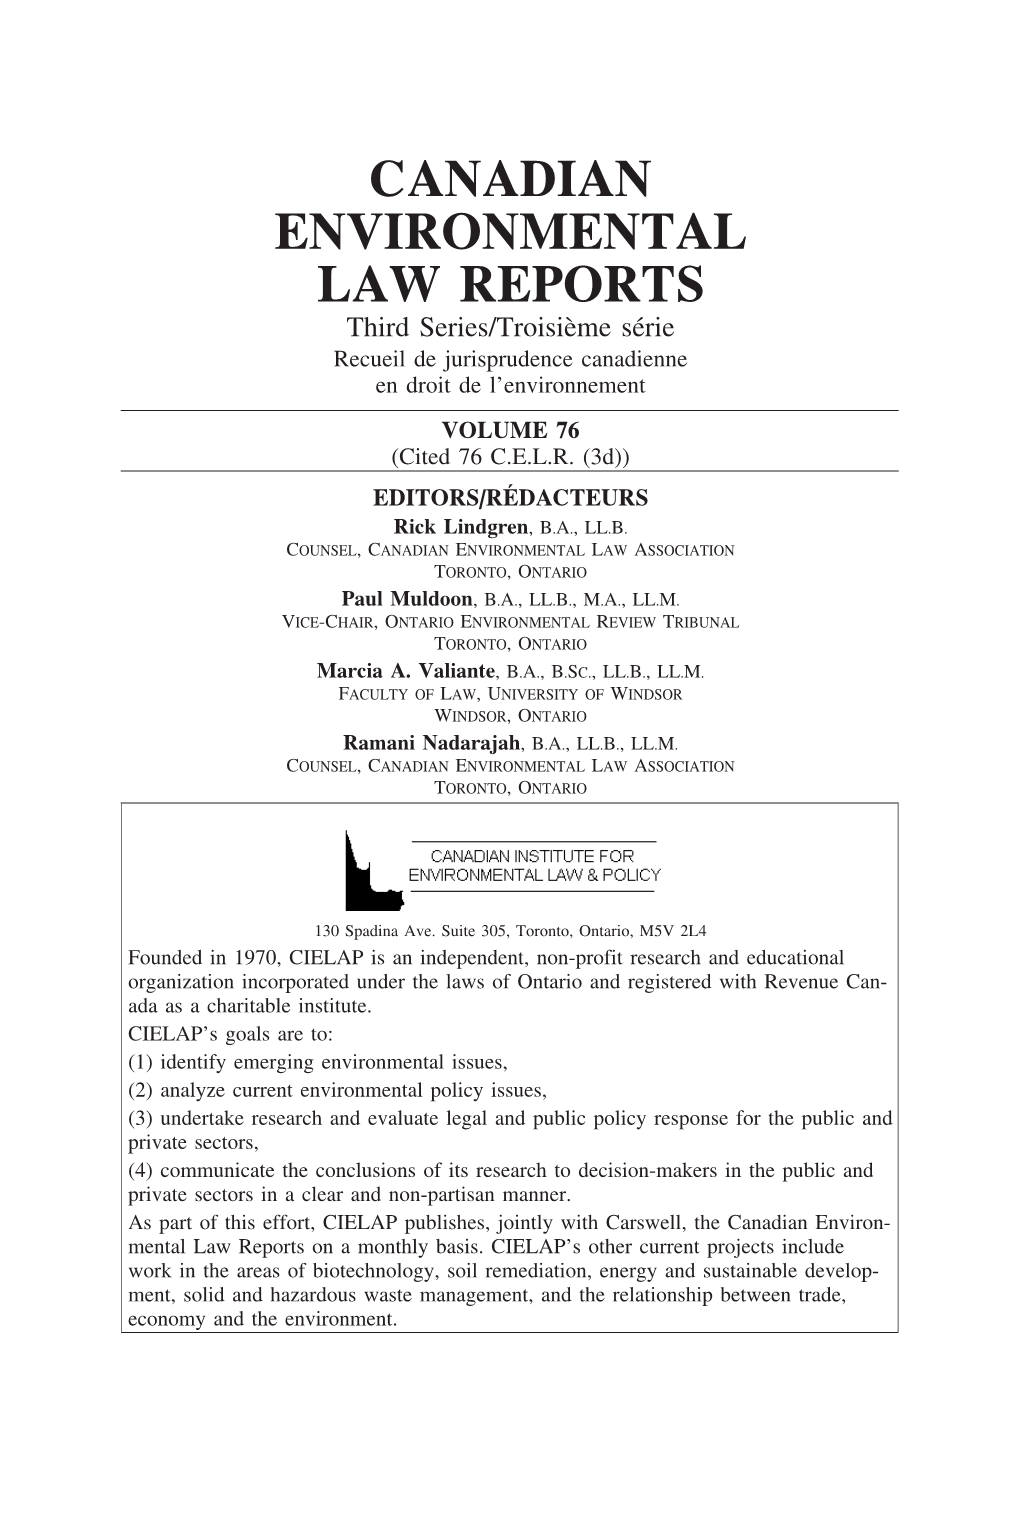 CANADIAN ENVIRONMENTAL LAW REPORTS Third Series/Troisi`Eme S´Erie Recueil De Jurisprudence Canadienne En Droit De L’Environnement VOLUME 76 (Cited 76 C.E.L.R